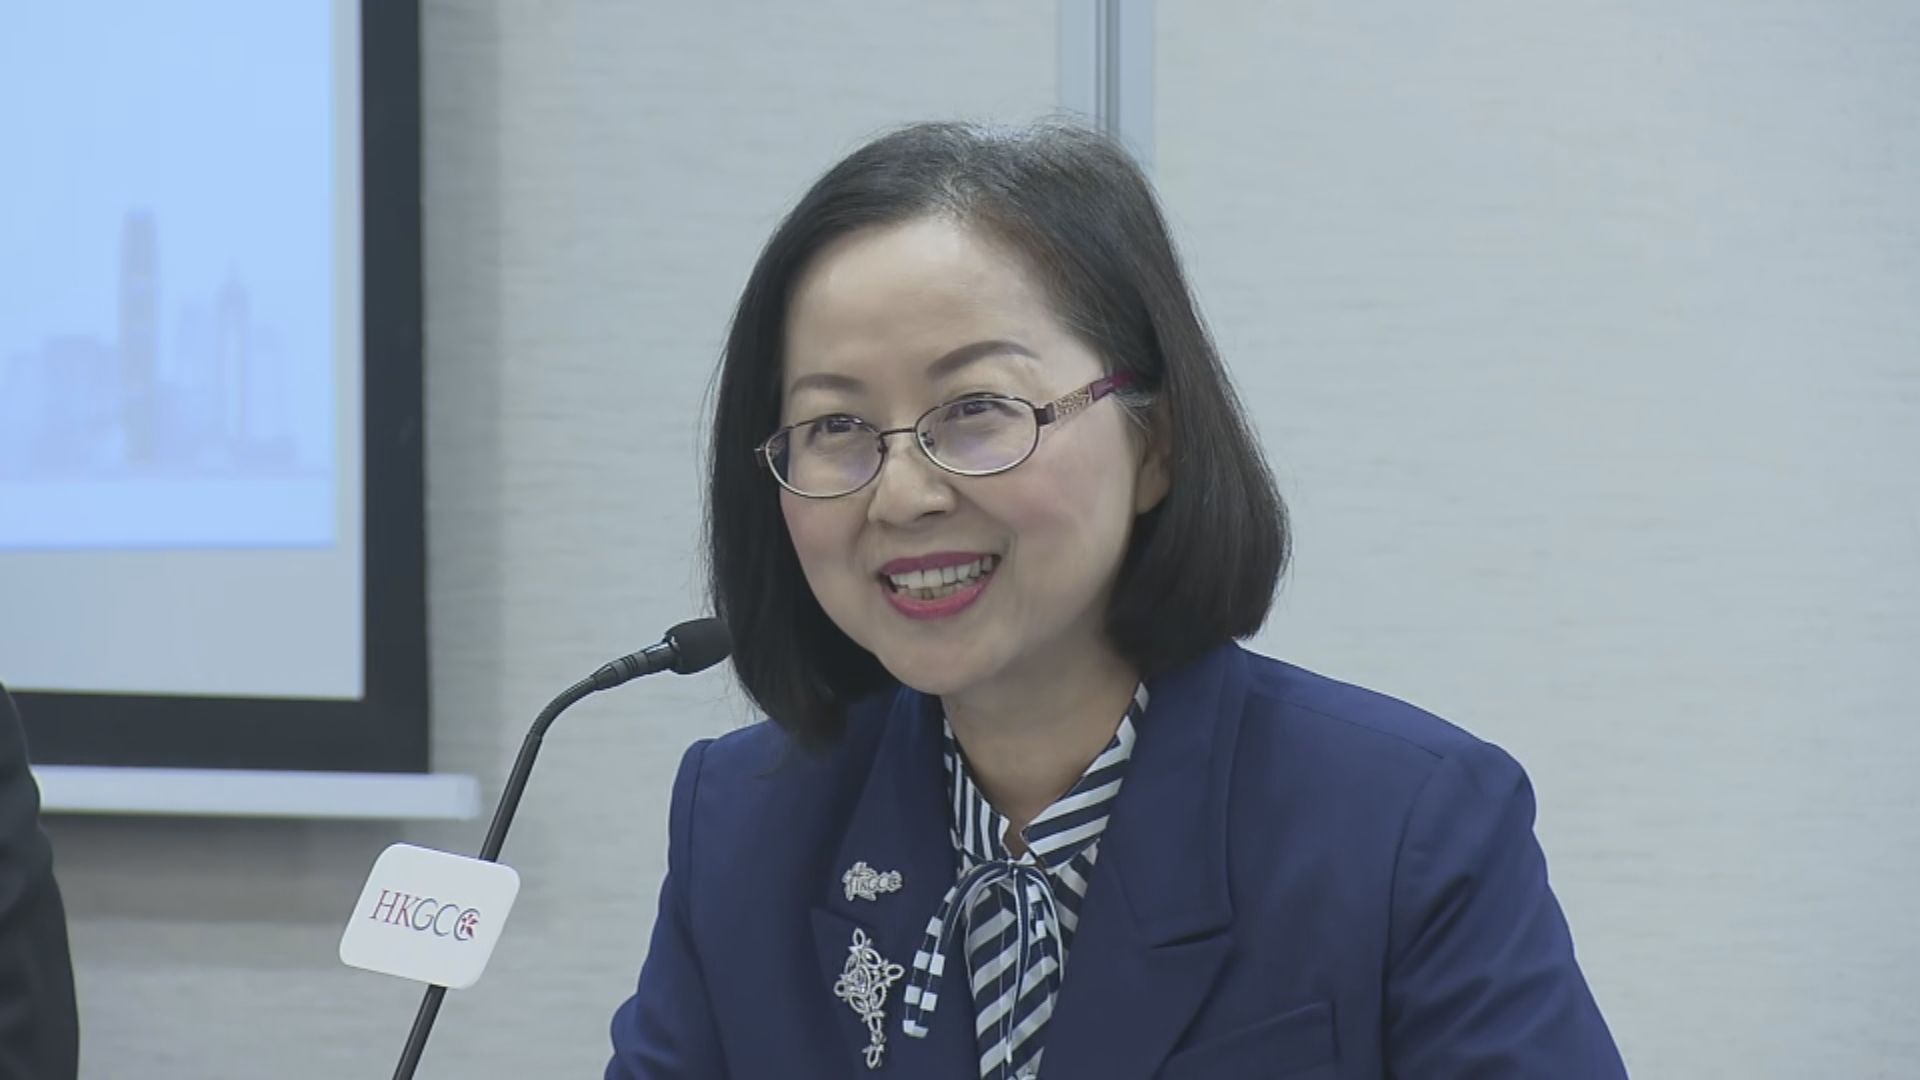 陳瑞娟引述夏寶龍指對香港未來發展充滿信心 重申一國兩制原則維持不變